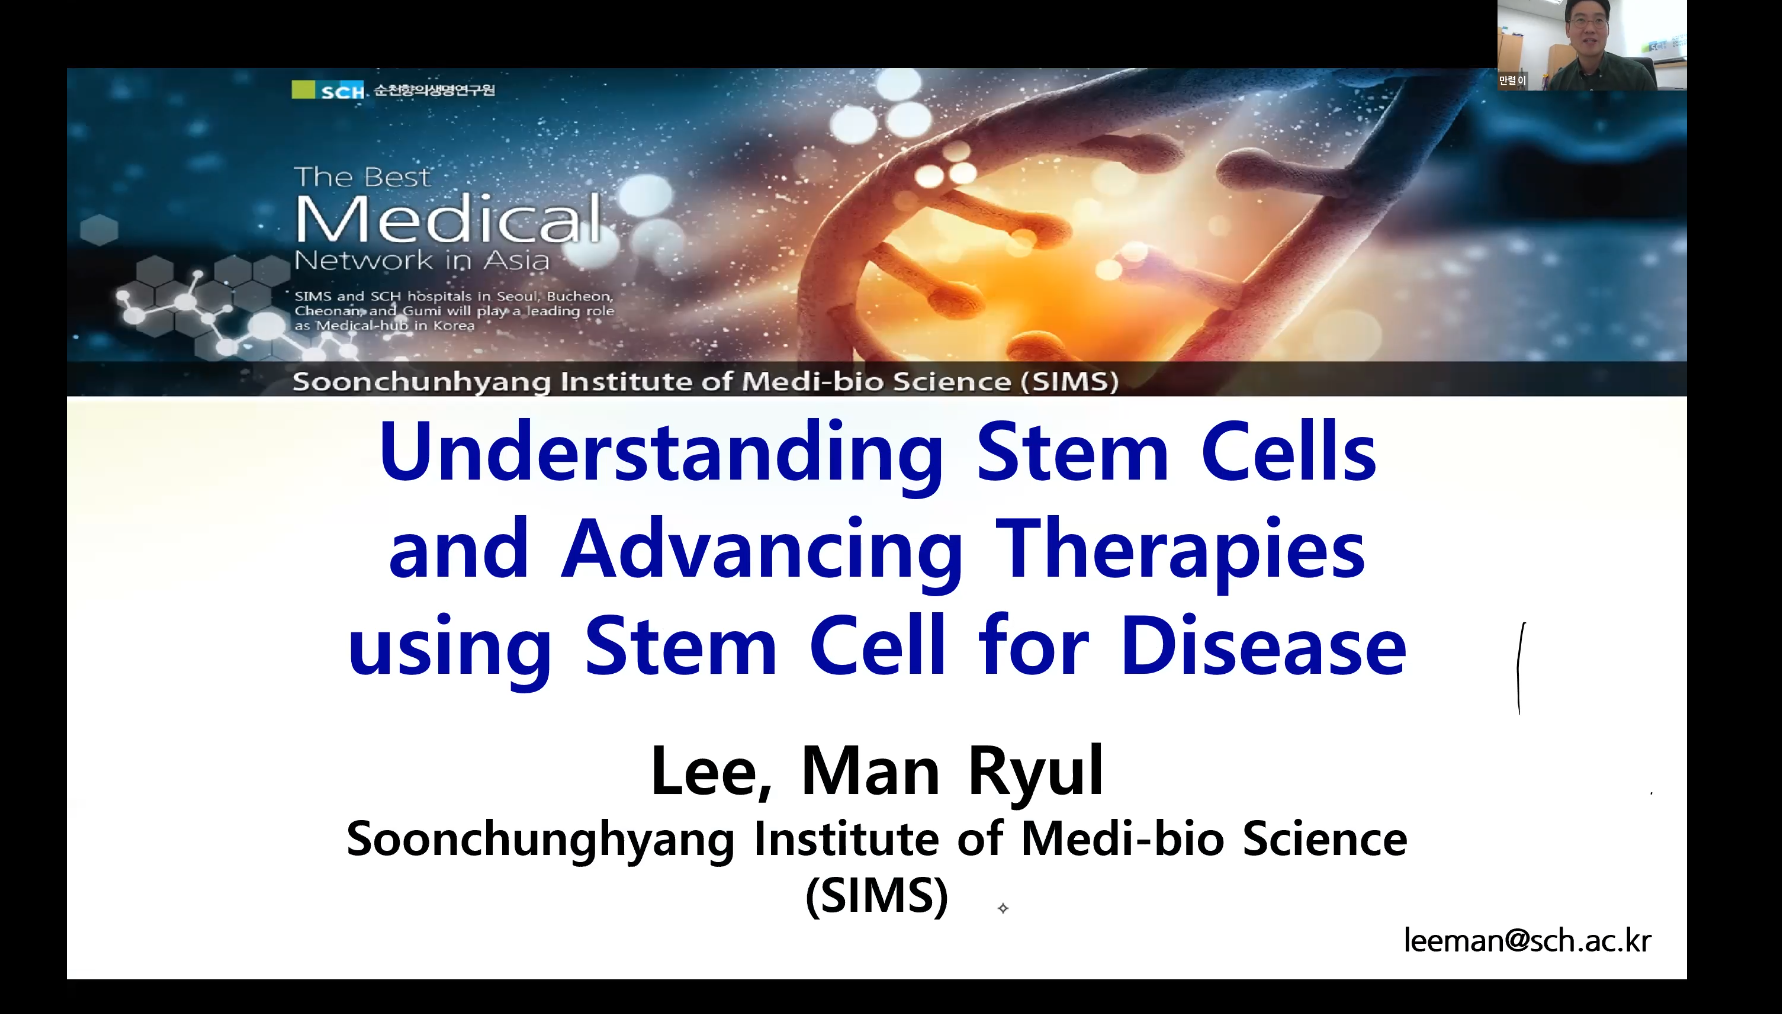 (교육)이만열 교수님 Understanding Stem Cells and Advancing Tharapies using Stem Cell for Disease 이미지